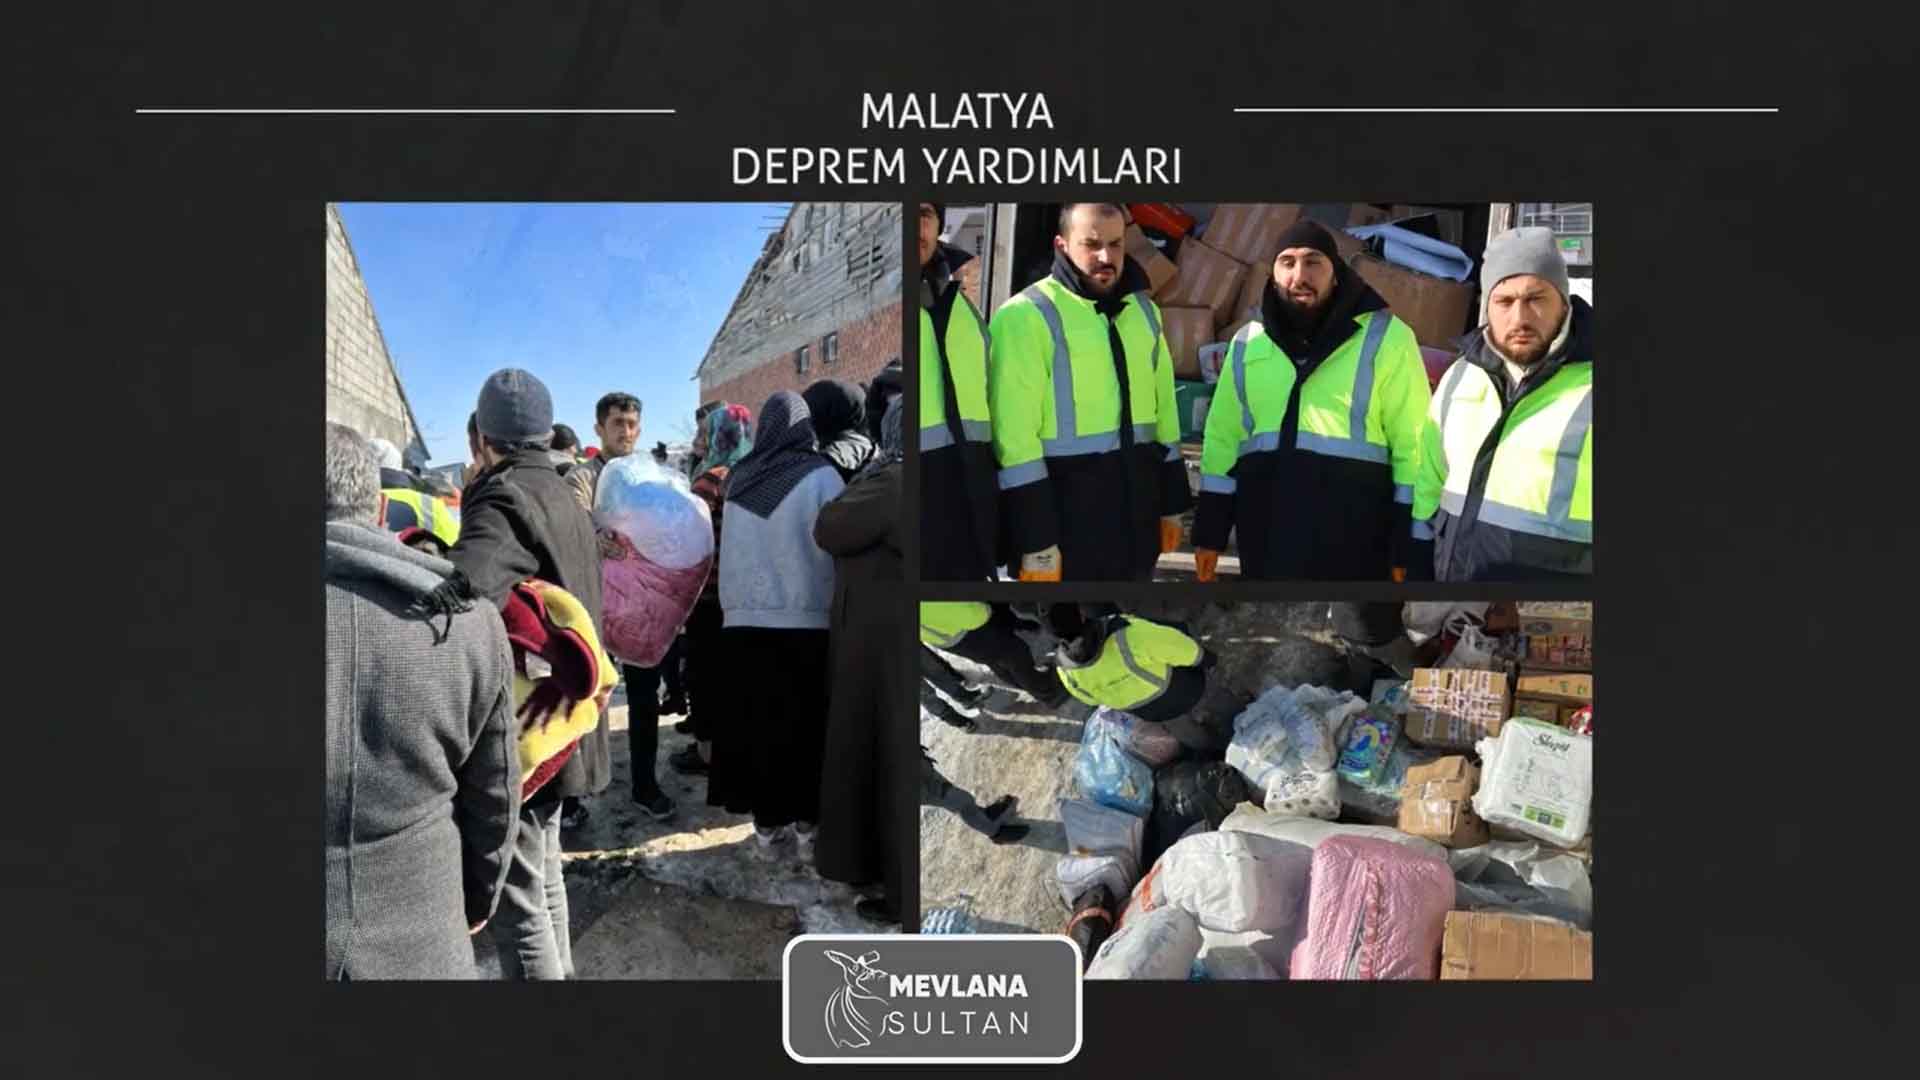 DEPREM YARDIMLAR(Malatya Deprem Yardımı)